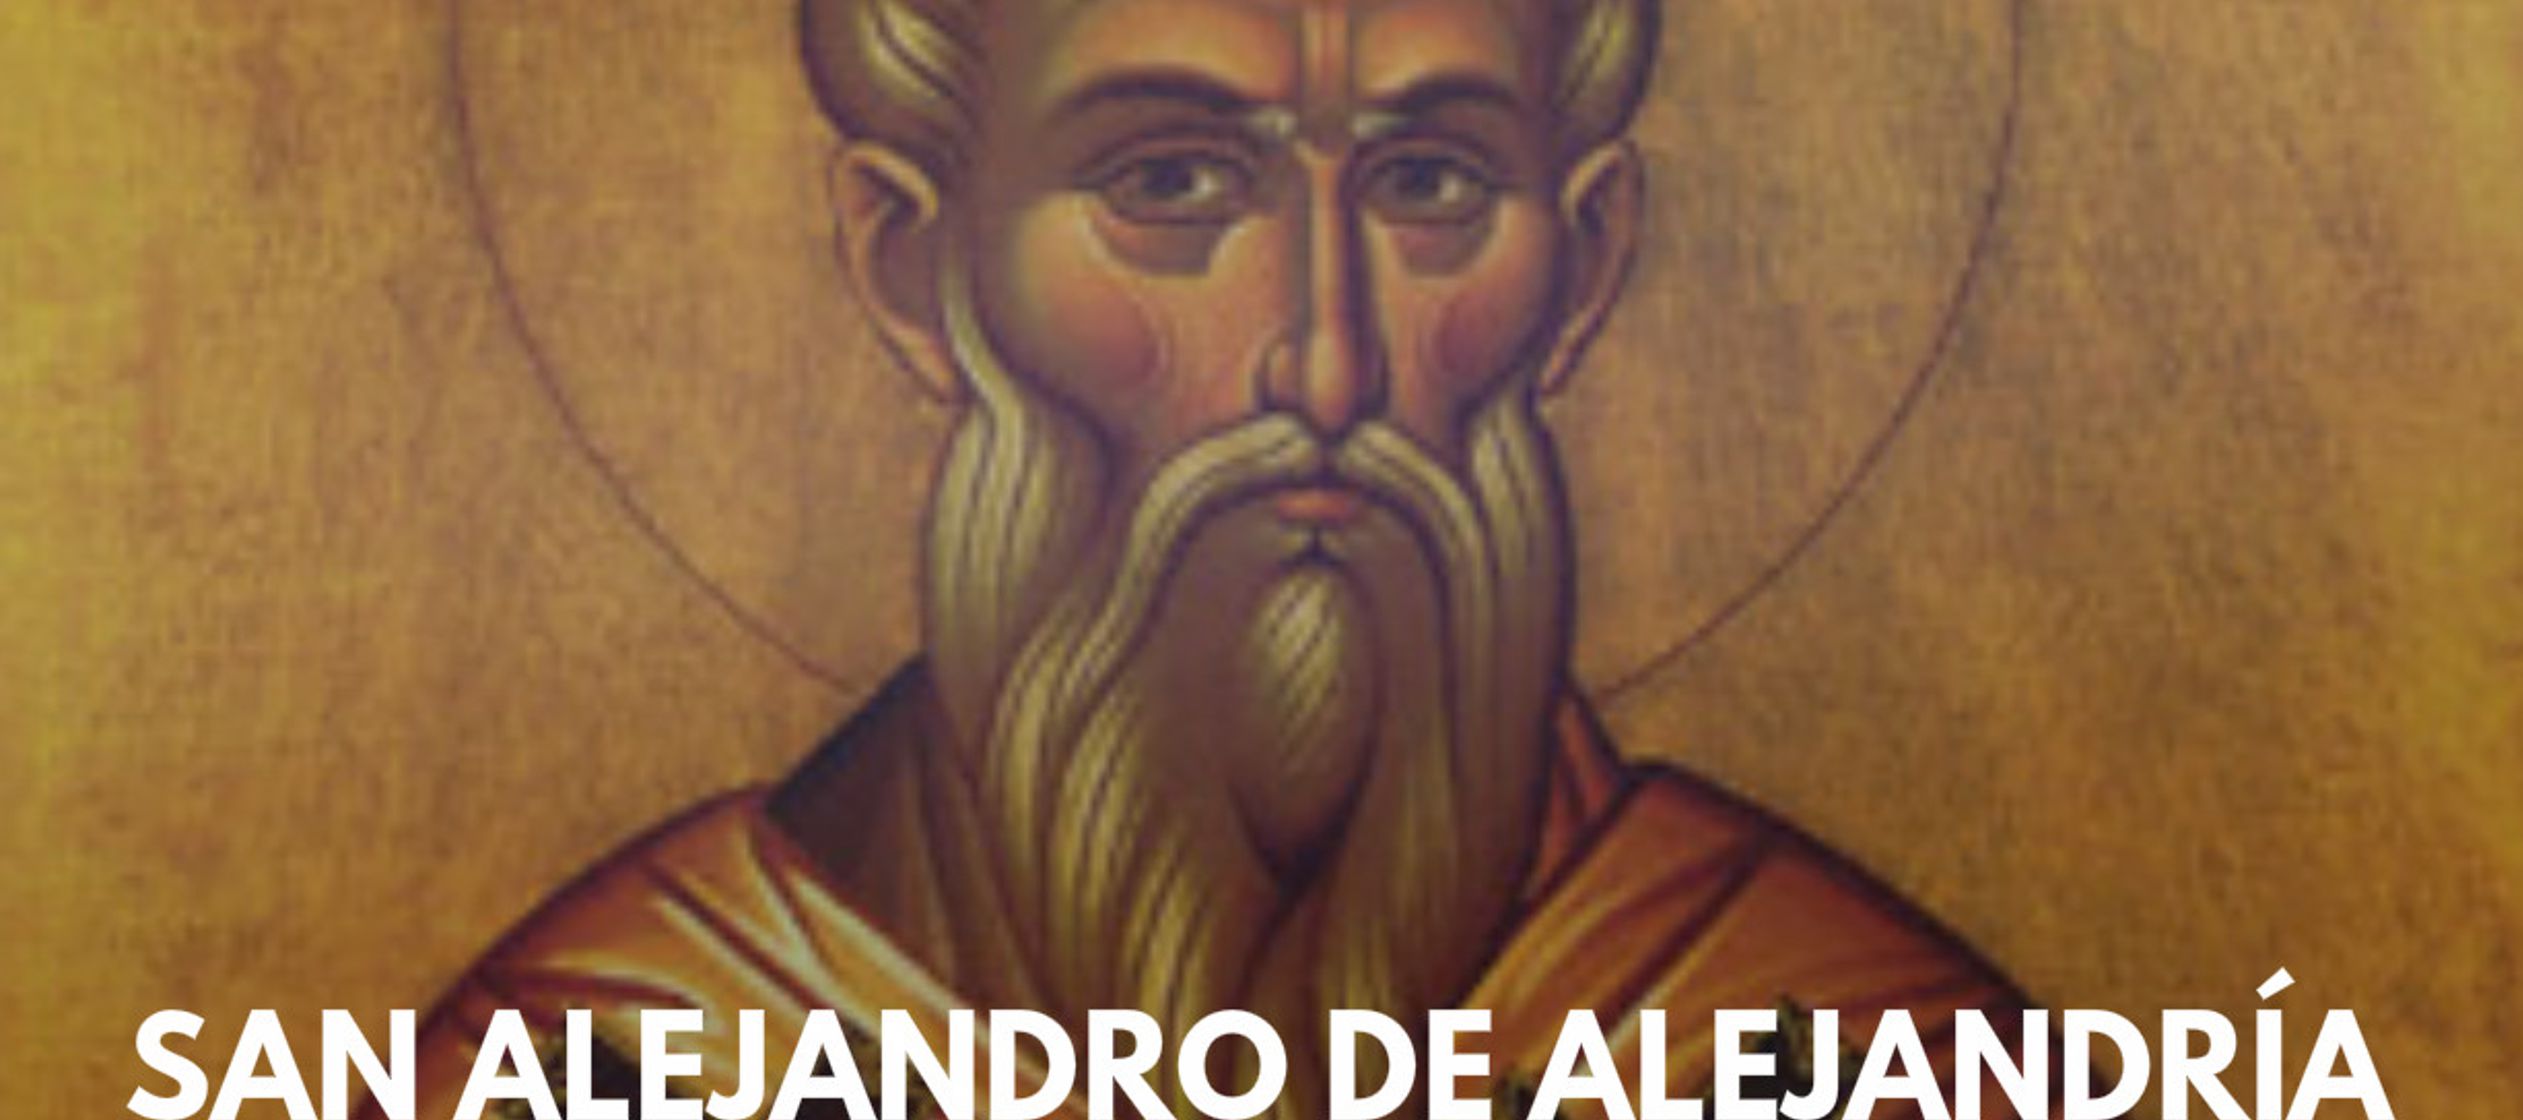 Etimológicamente: Alejandro = Aquel que protege a los hombres. Viene de la lengua griega.